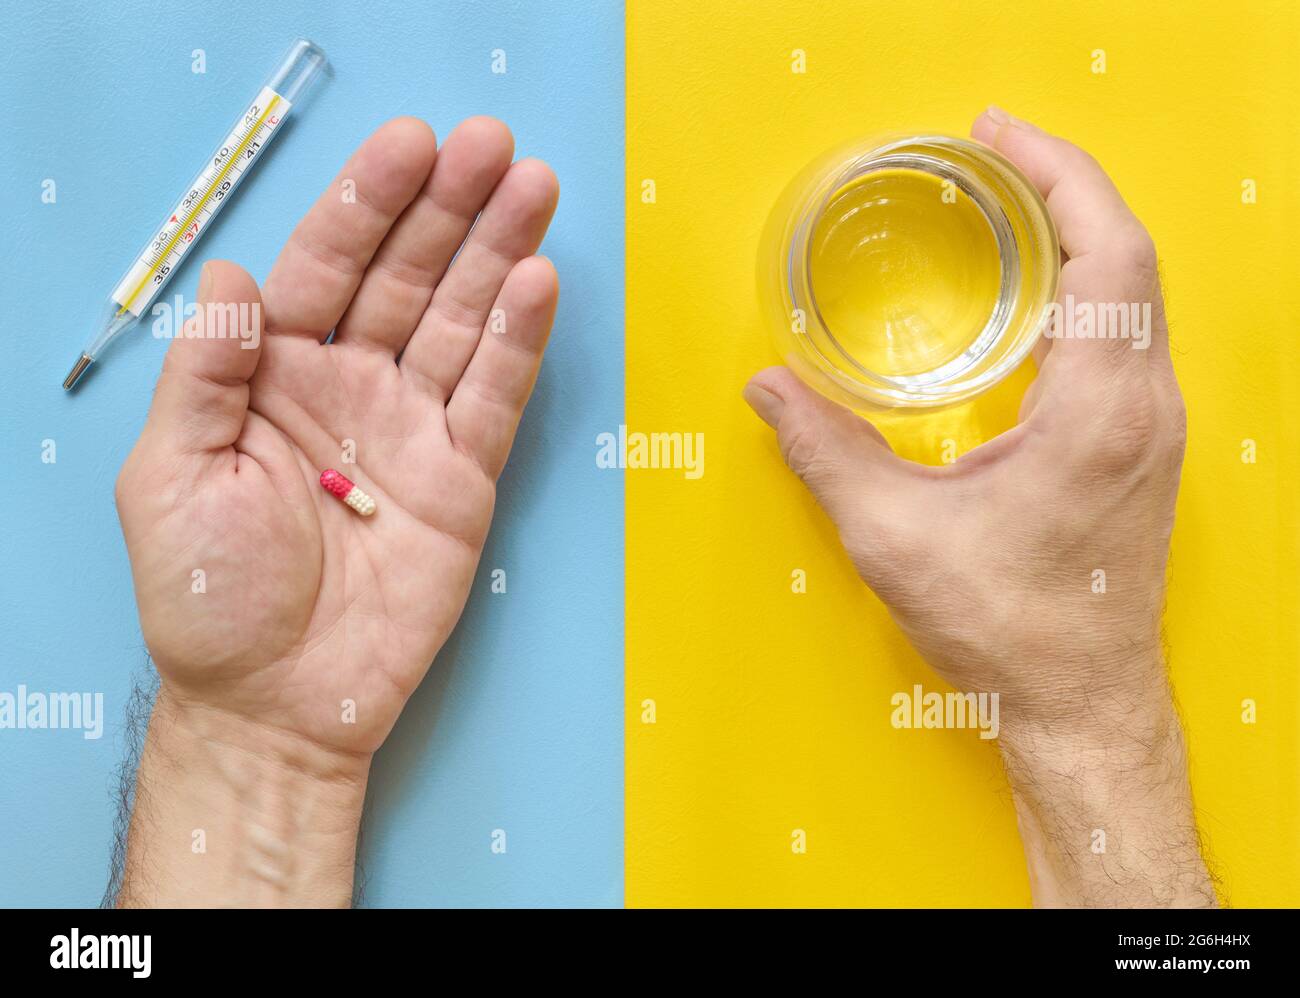 Tomando medicina, las manos del hombre sosteniendo una píldora y un vaso de agua, vista superior, fondo amarillo y azul Foto de stock